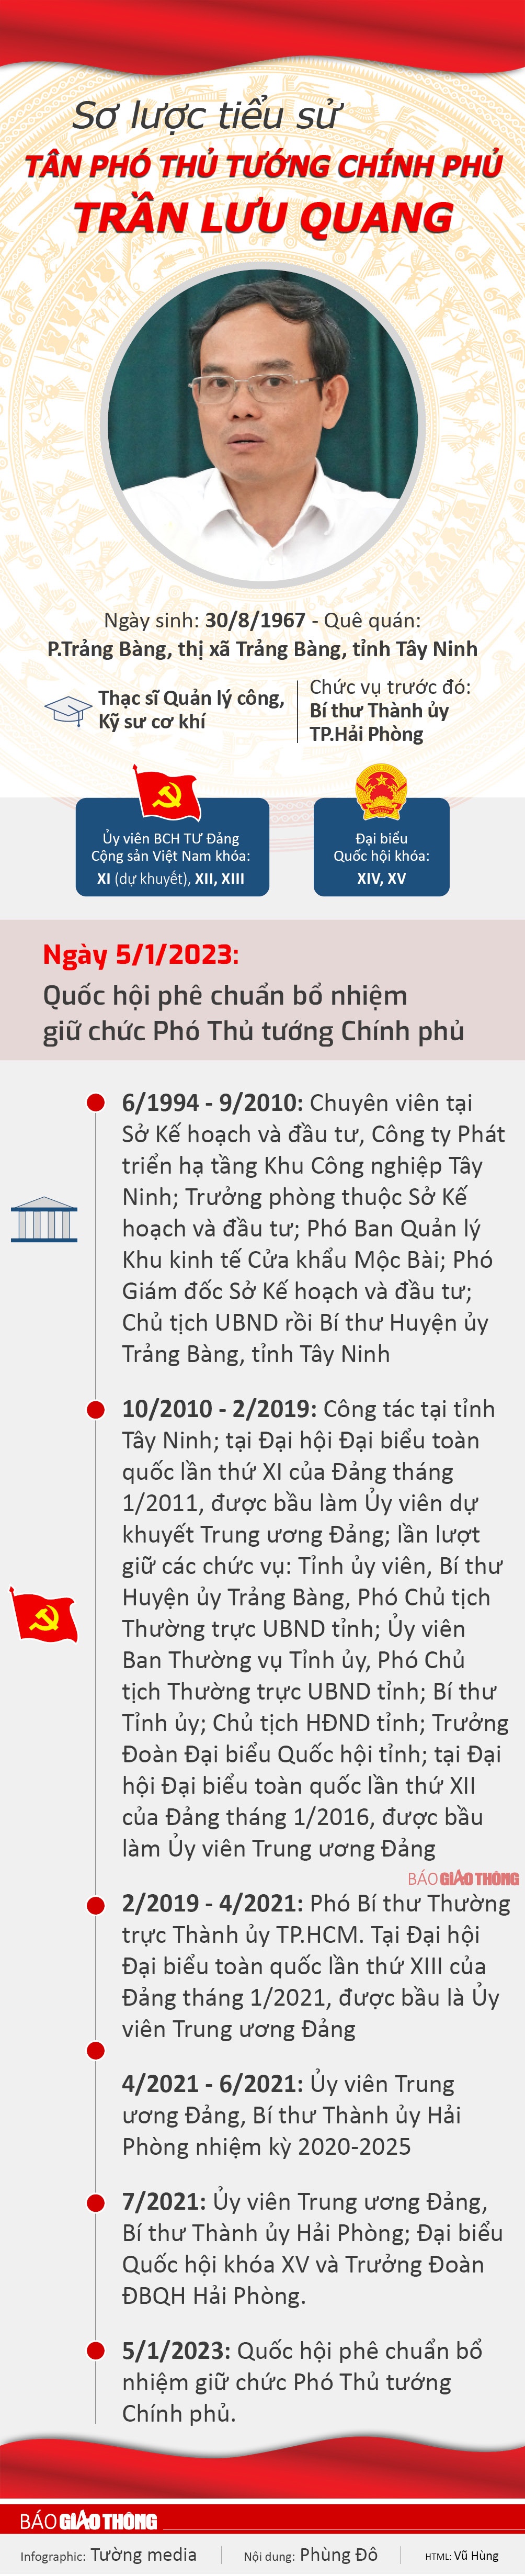 Infographic: Sơ lược tiểu sử tân Phó Thủ tướng Chính phủ Trần Lưu Quang - 1